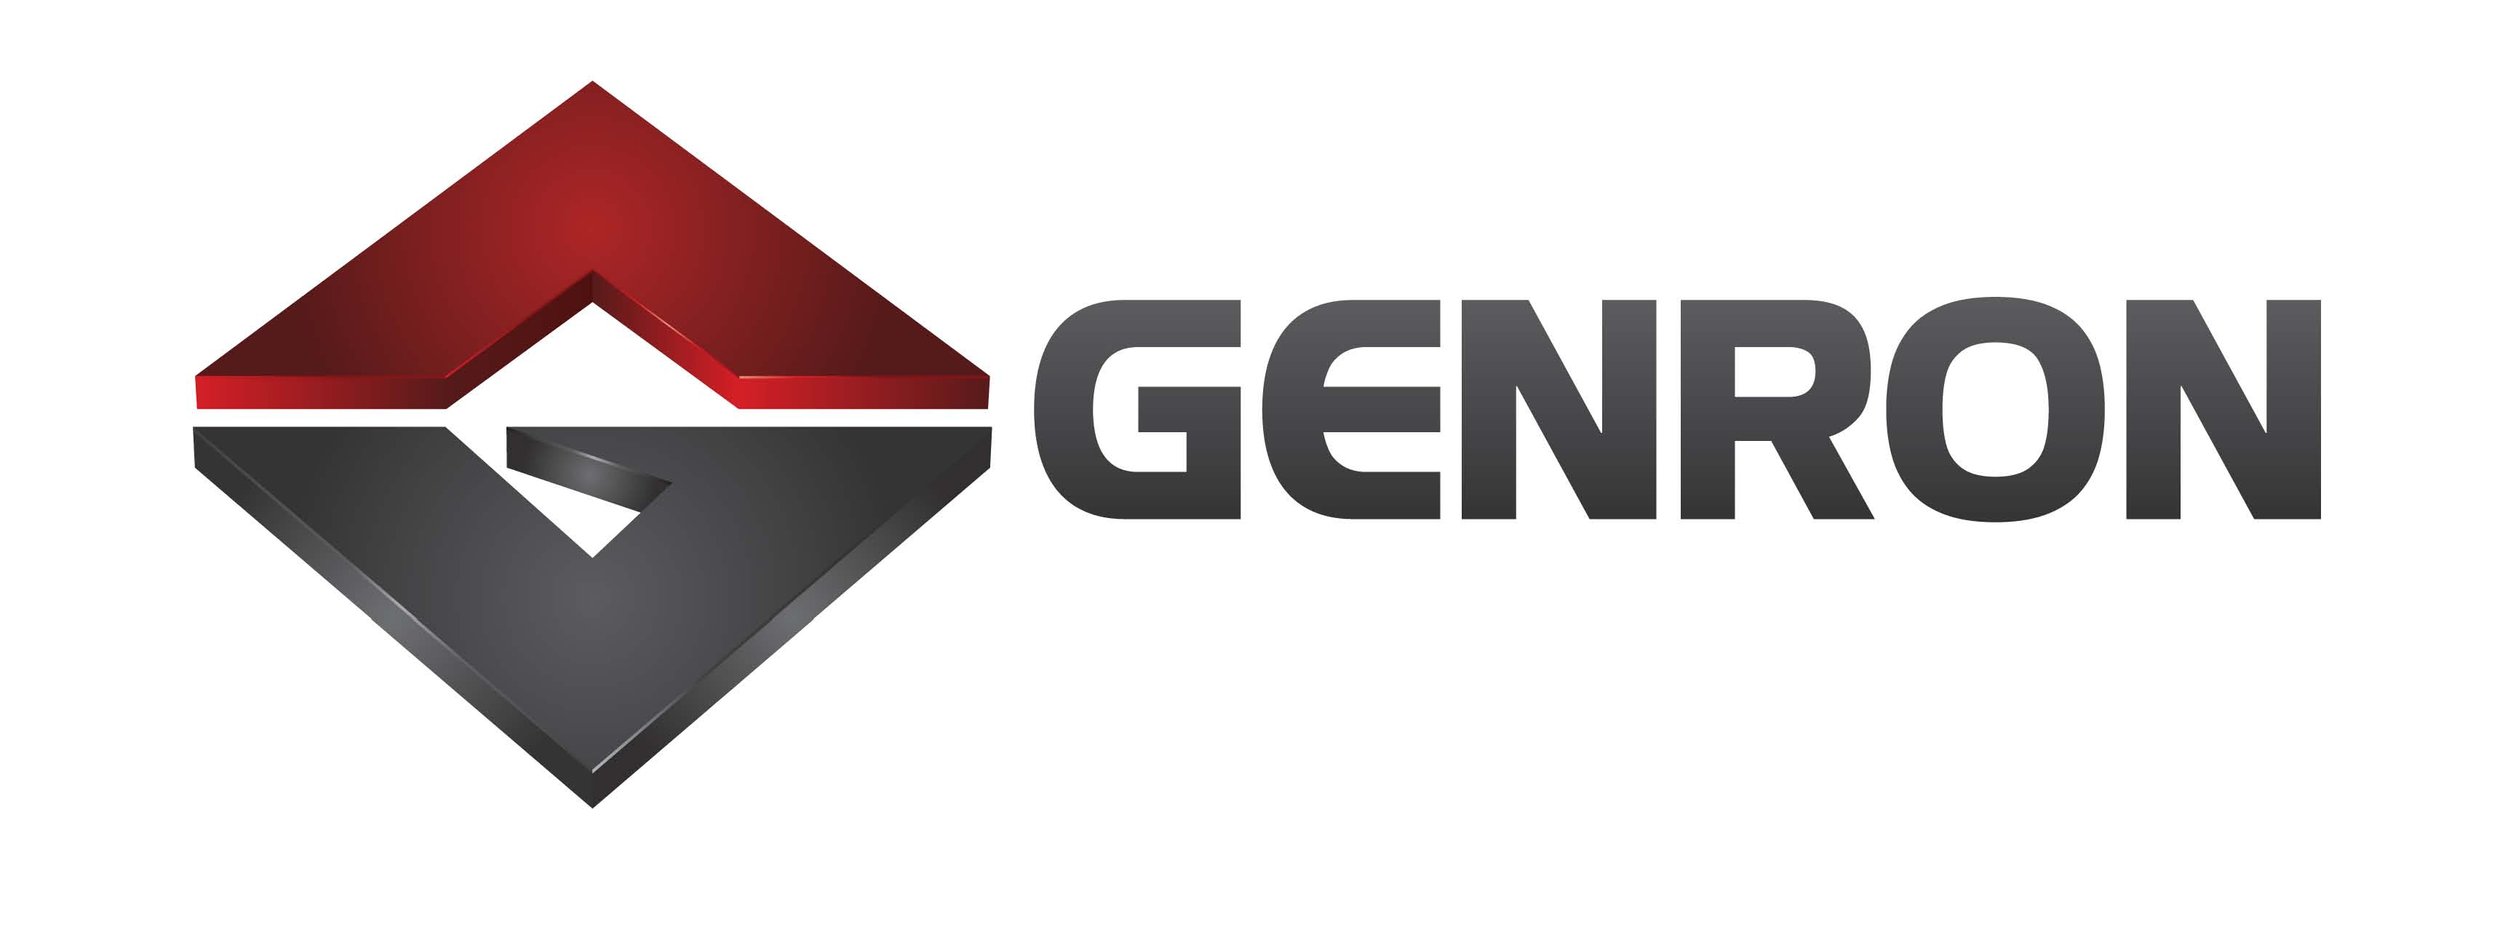 Genron Logo.jpg